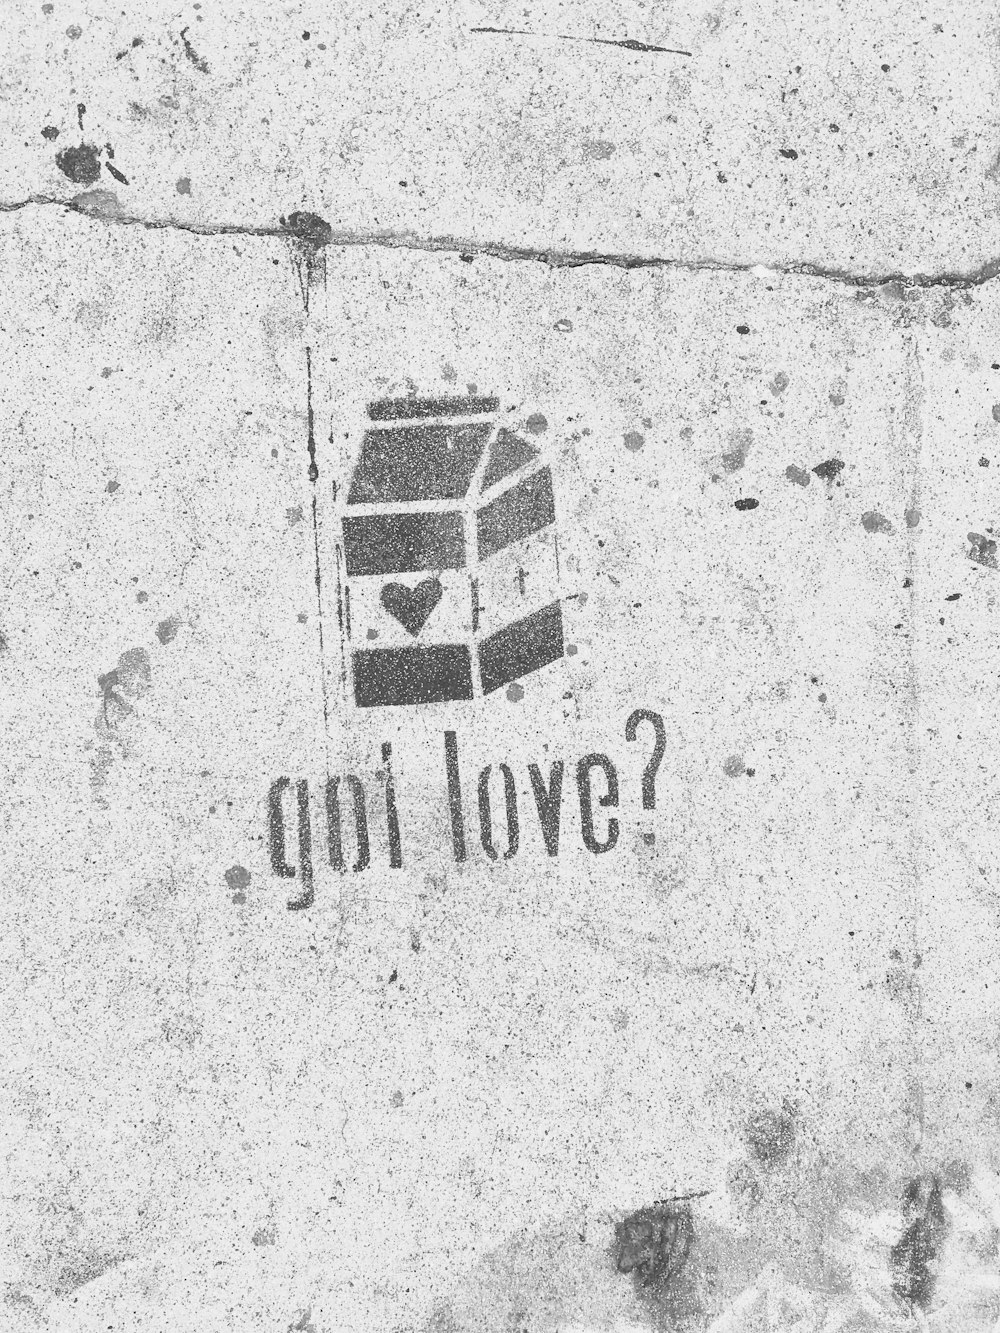 ¿Tienes amor? con graffiti de cartón de leche en pared de hormigón